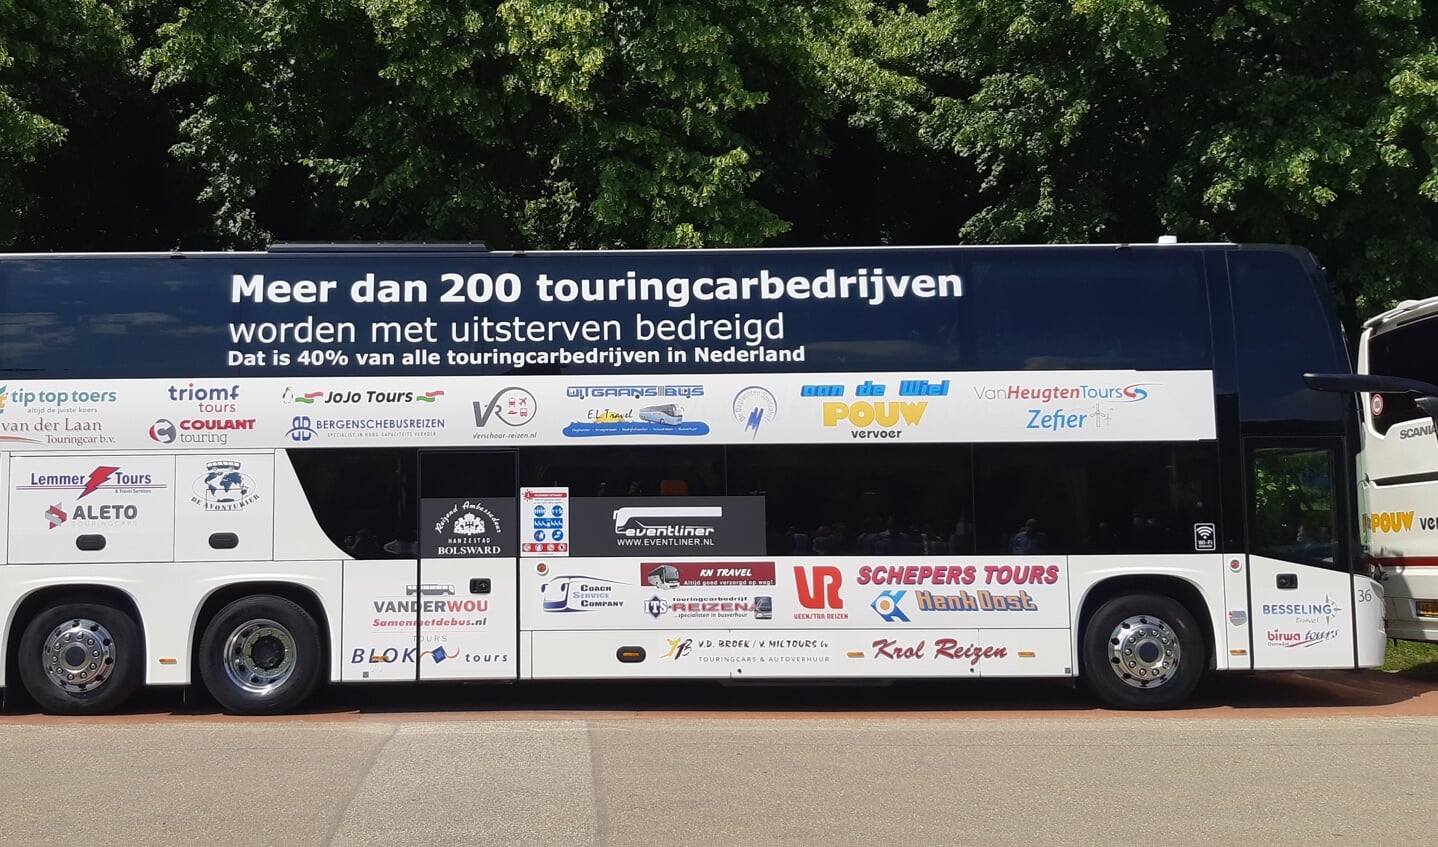 Een dubbeldekker met logo's van alle touringcarbedrijven die deelnamen aan de 'toeteractie' in Den Haag.